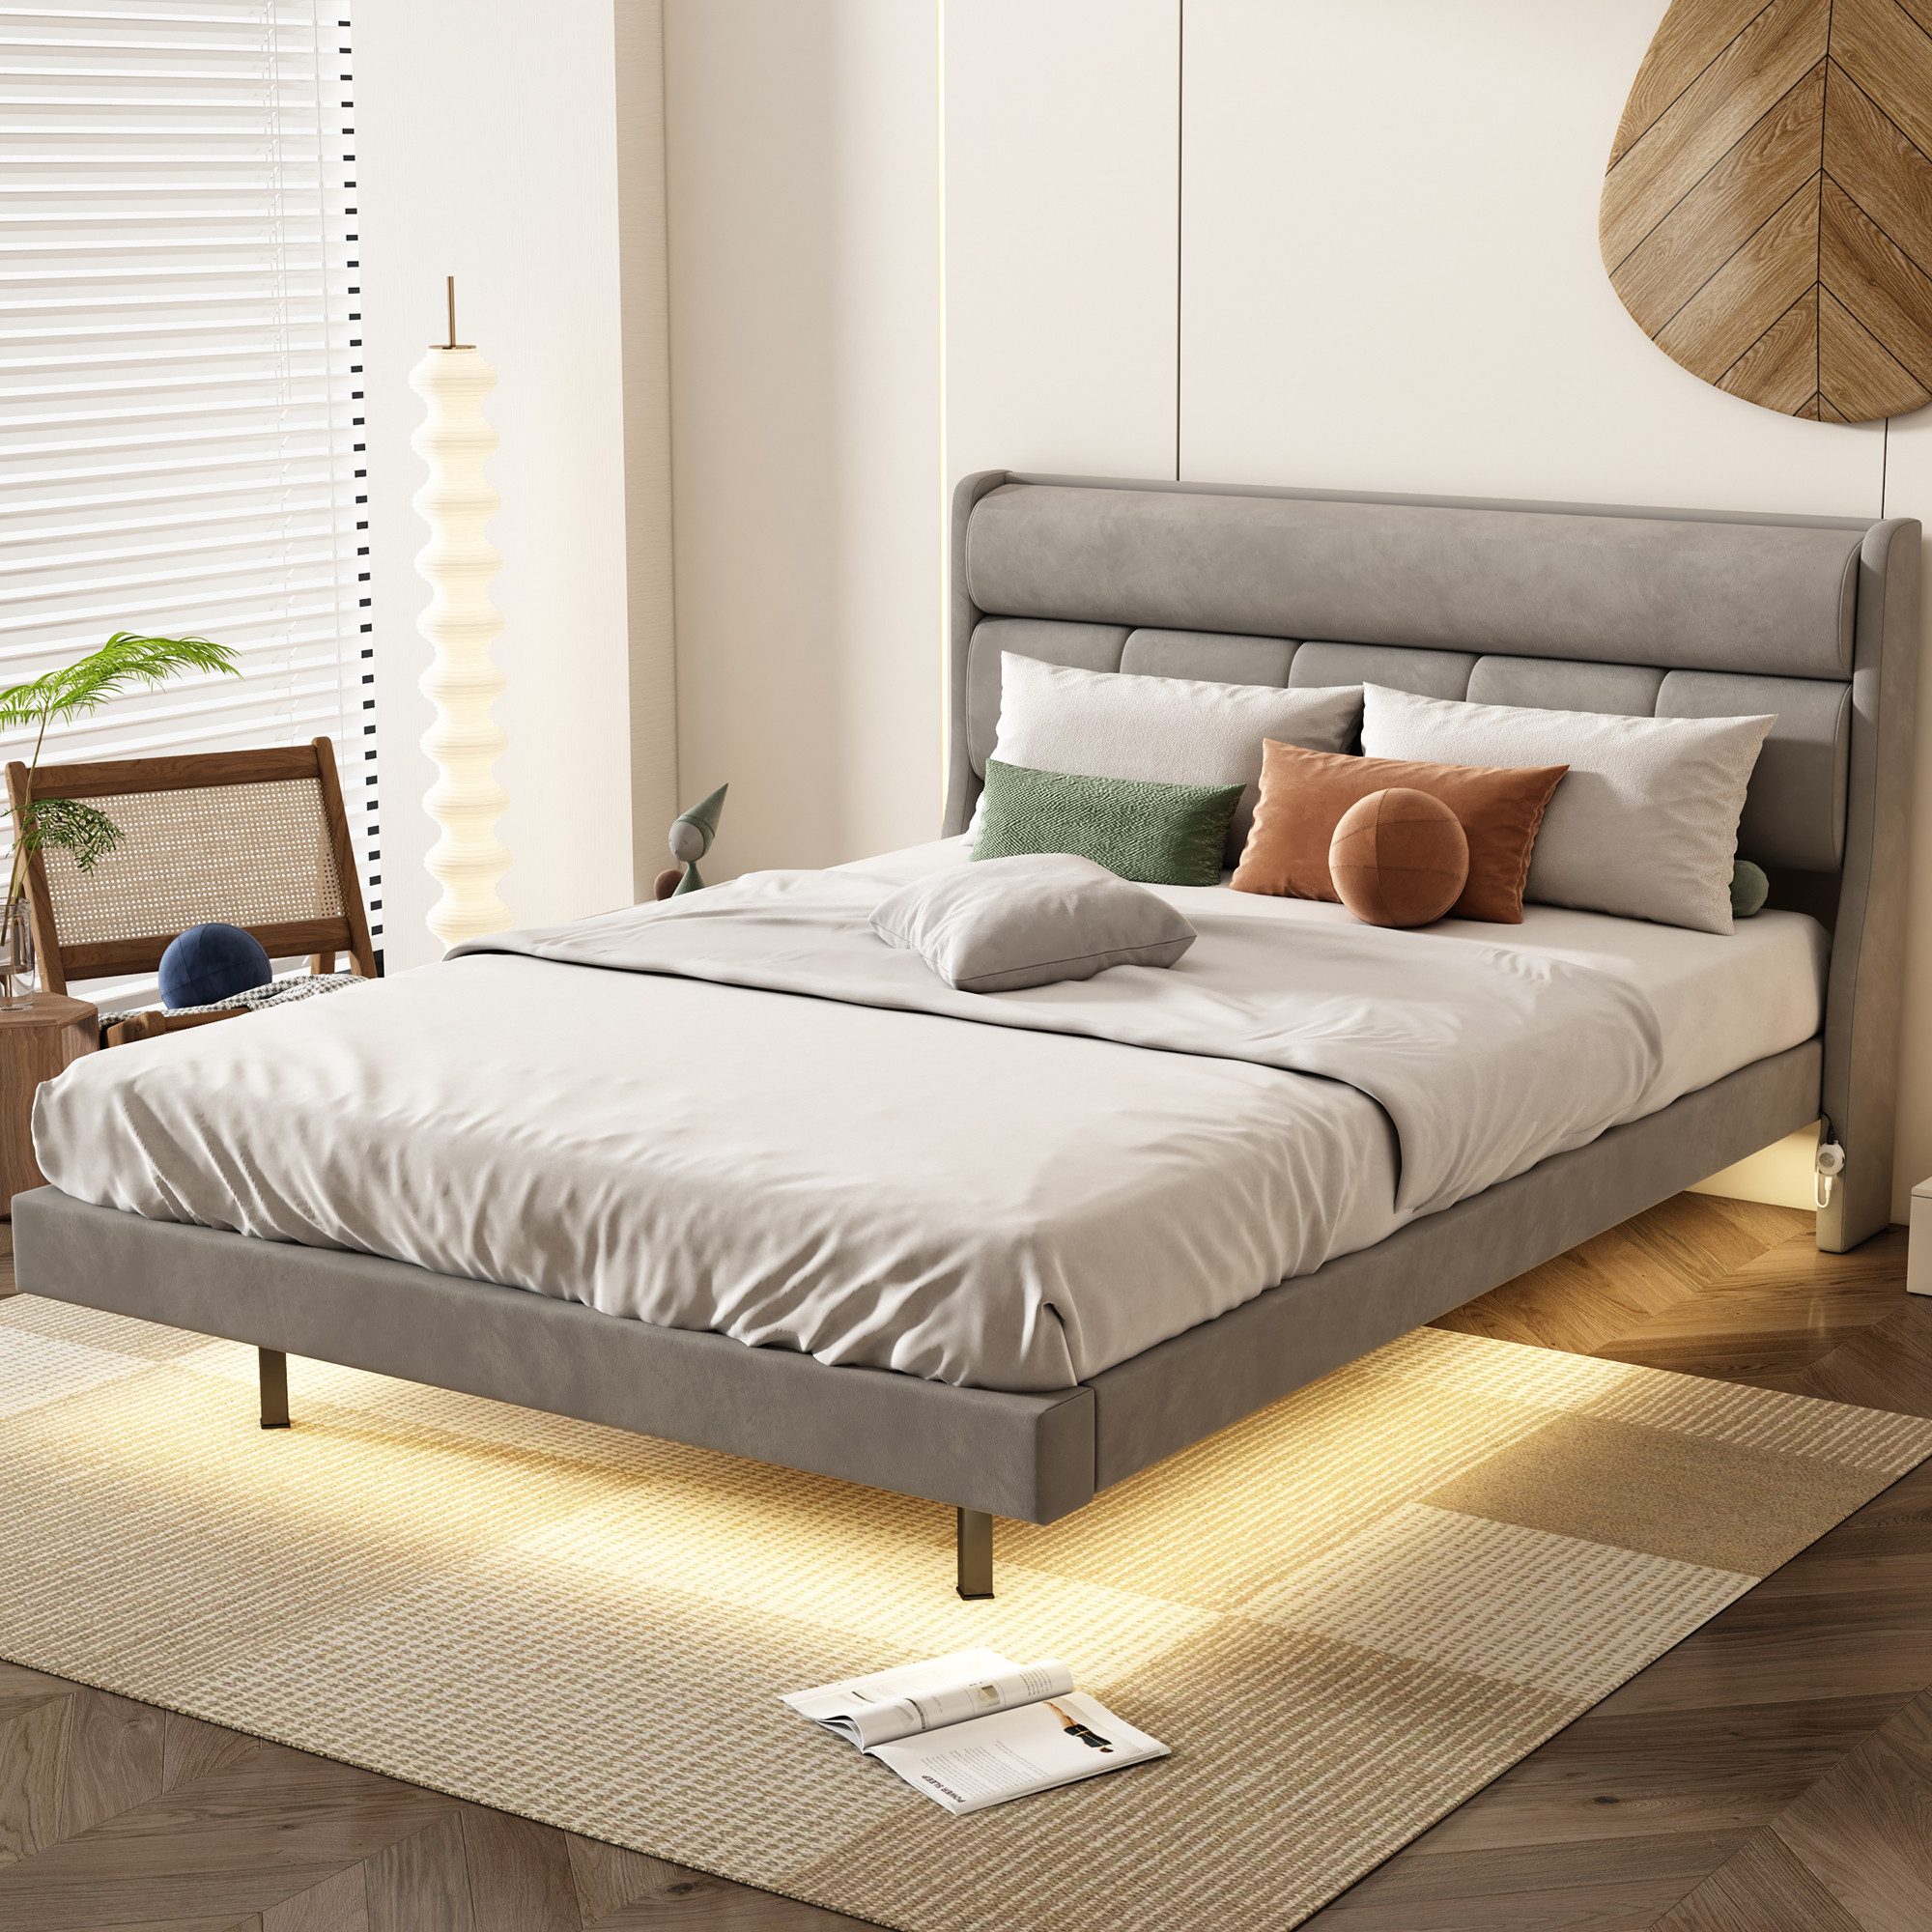 MODFU Polsterbett flaches Bett, schwebendes Bett (ausgestattet mit menschlichem Sensorlicht, warm gepolstert), ohne Matratze, 140x200 cm